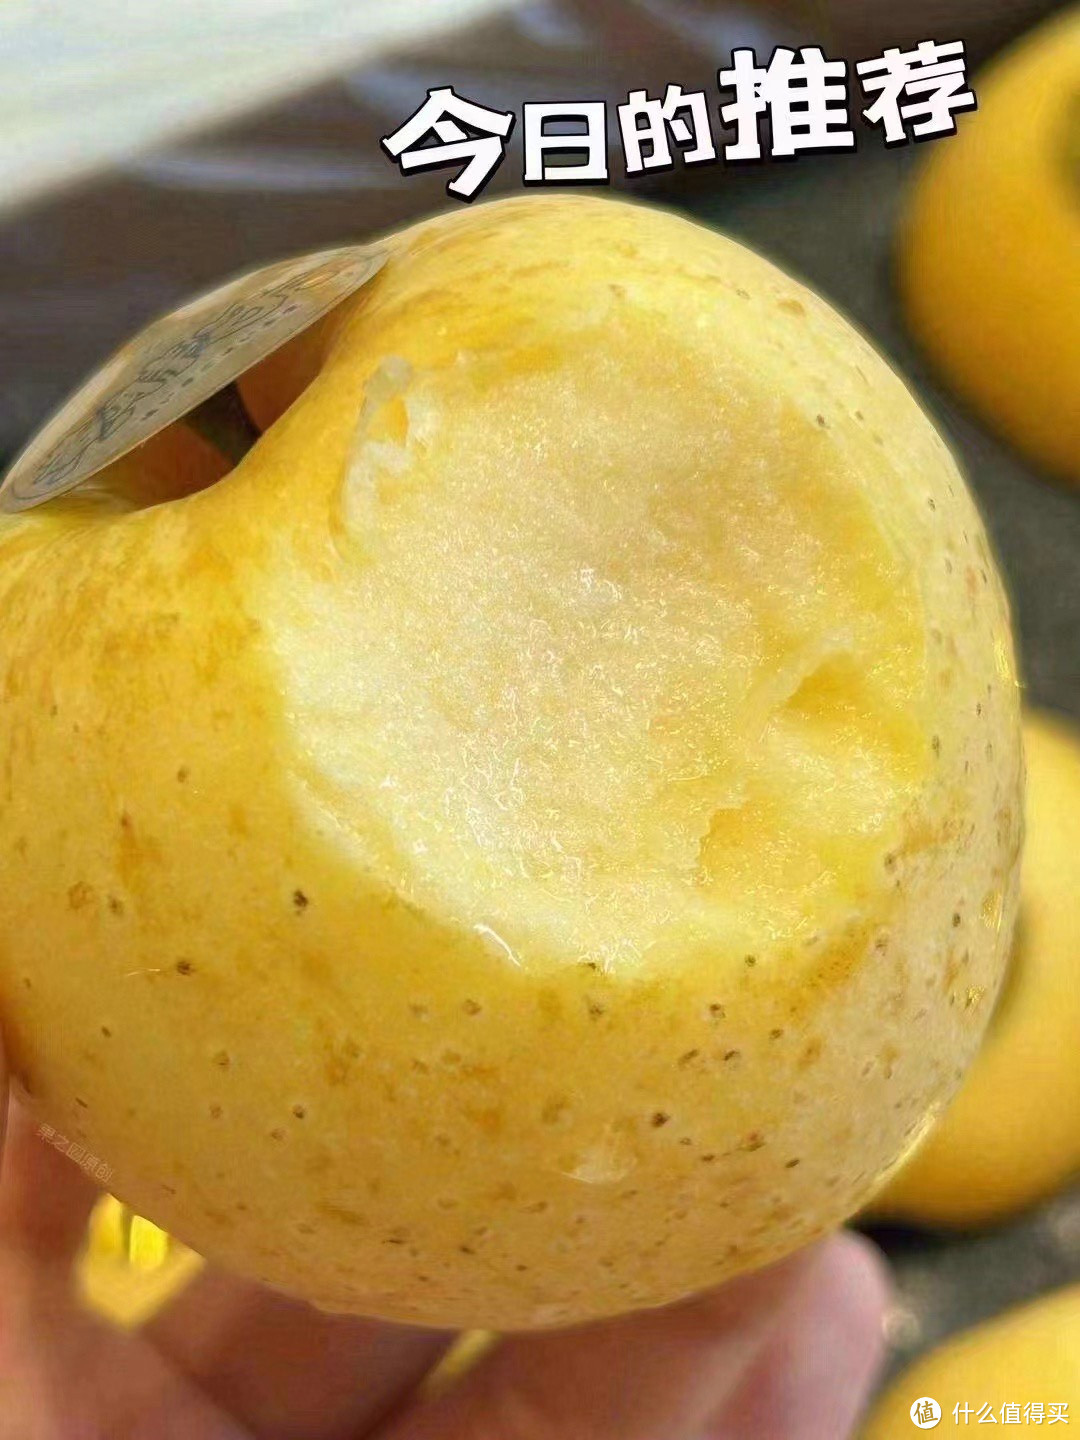 苹果中的爱马仕，保证你吃了一直会想念的金苹果，送礼或给家人的一种关爱❤️#维纳斯金苹果#